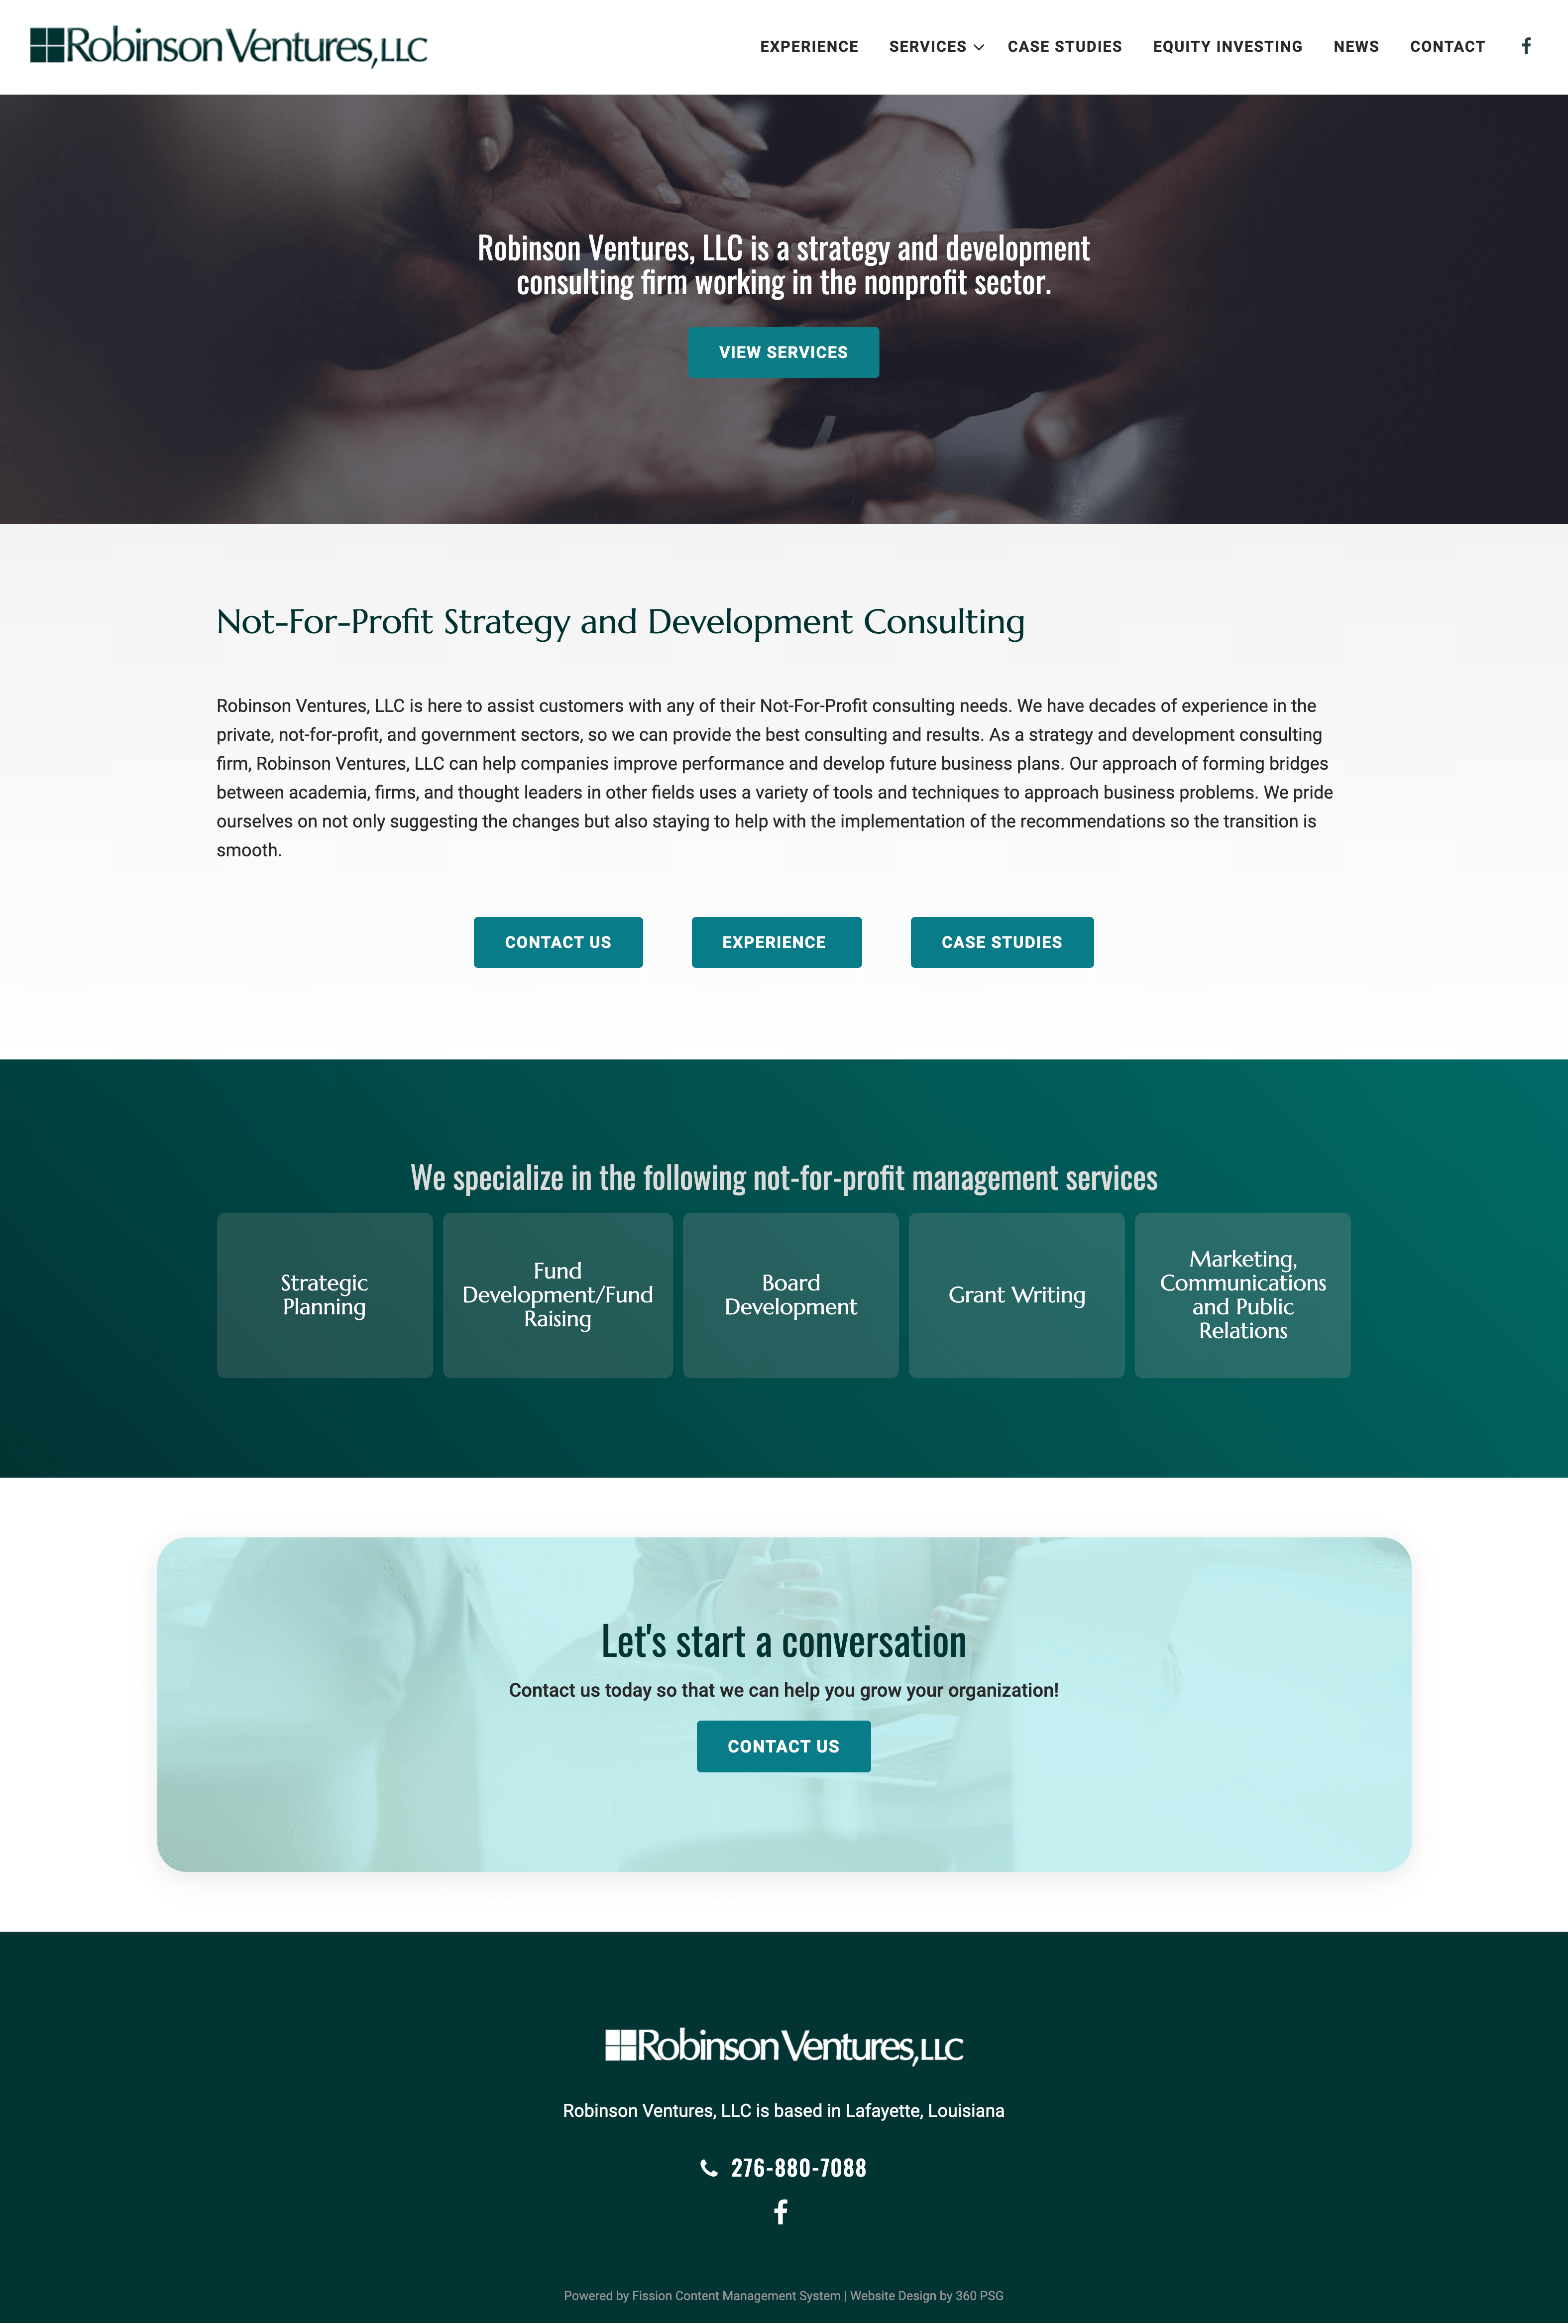 Robinson Ventures, LLC Website - Desktop